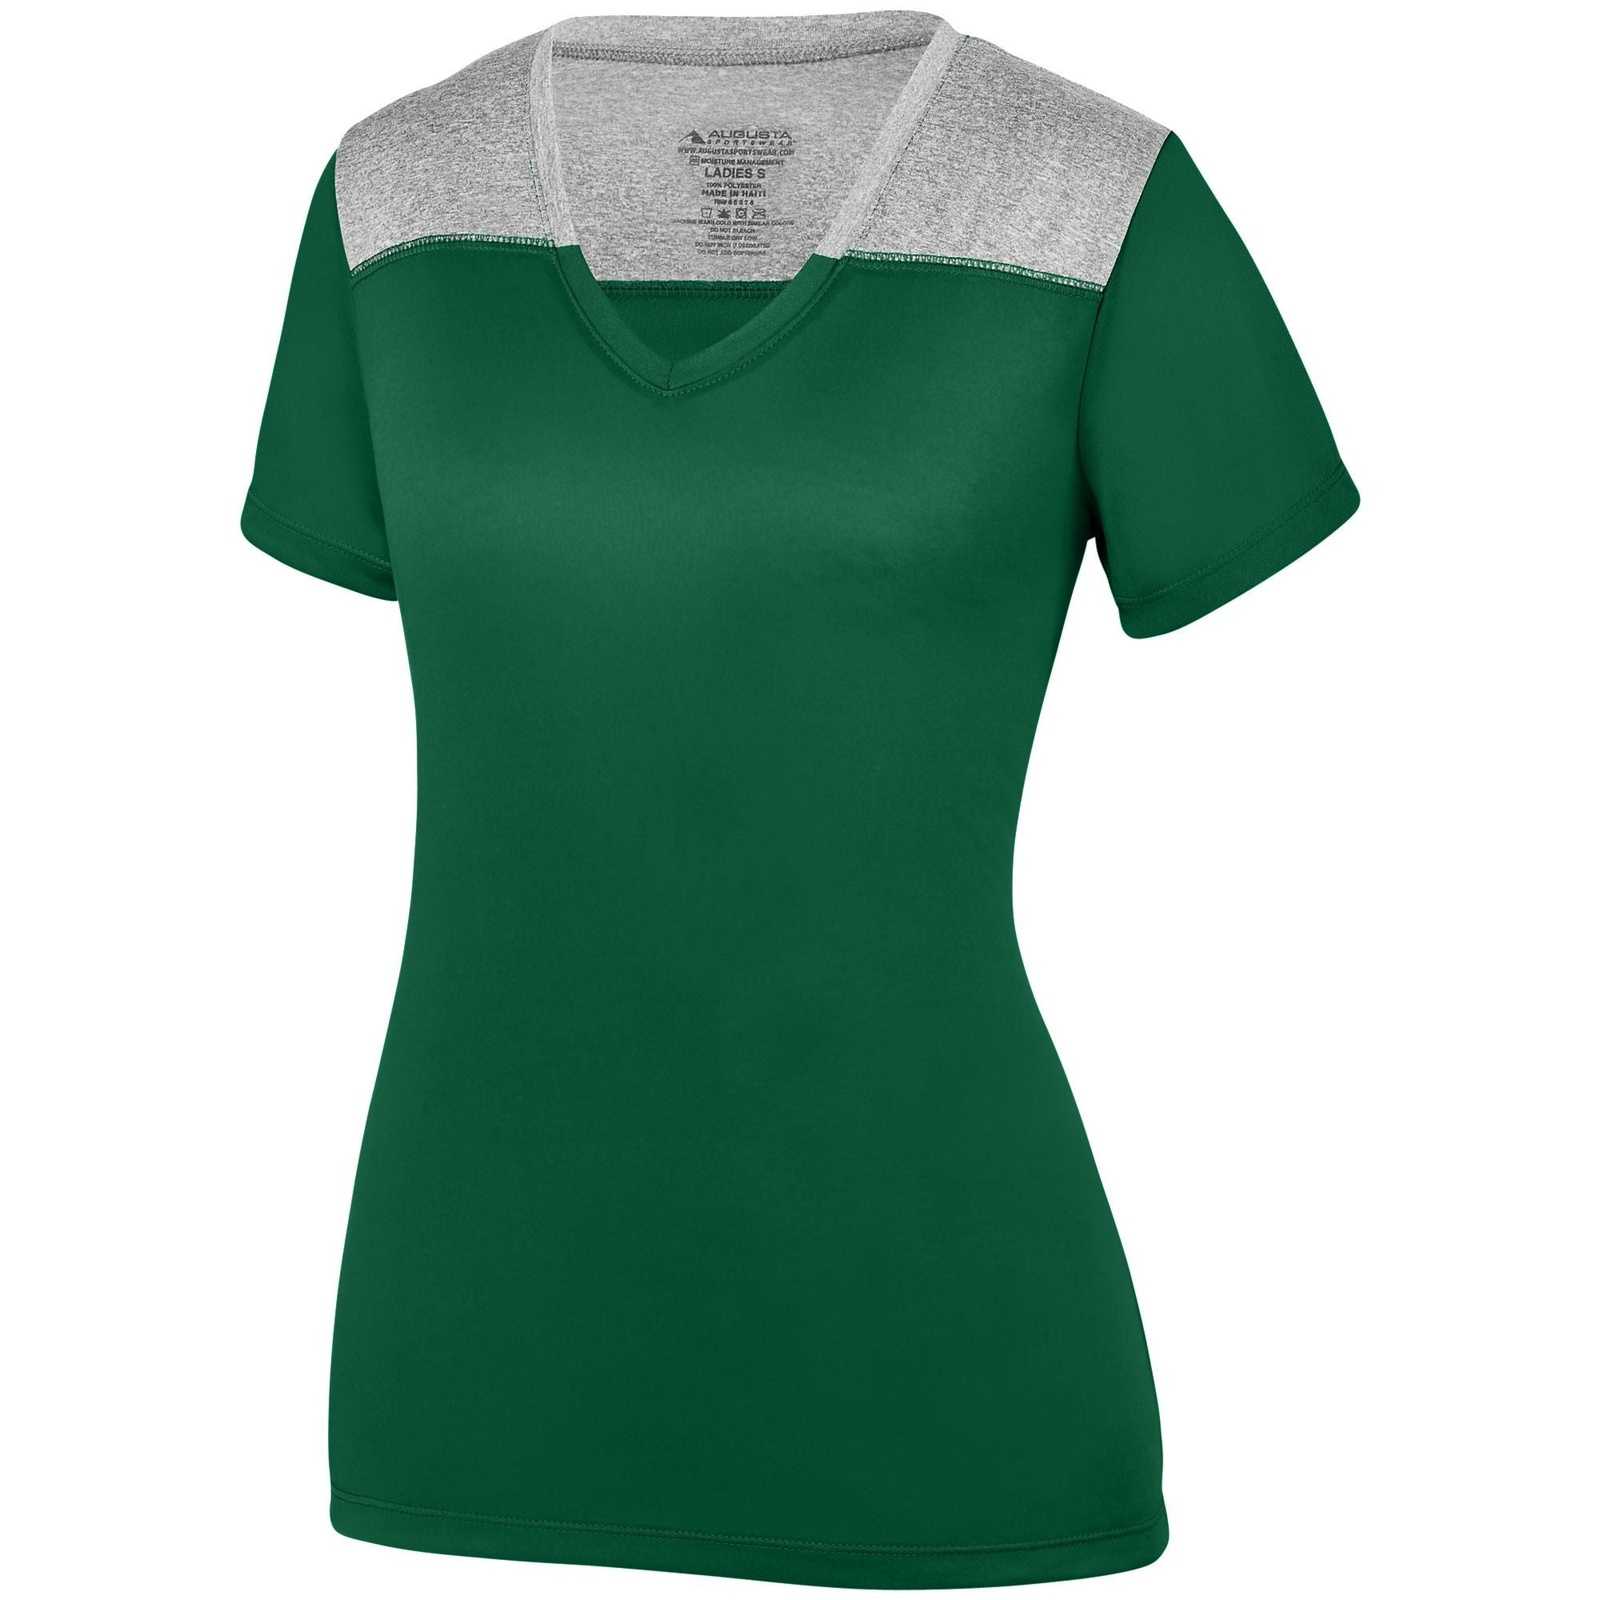 Augusta 3057 Ladies Challenge T-Shirt - Dark Green Graphite Heather - HIT a Double